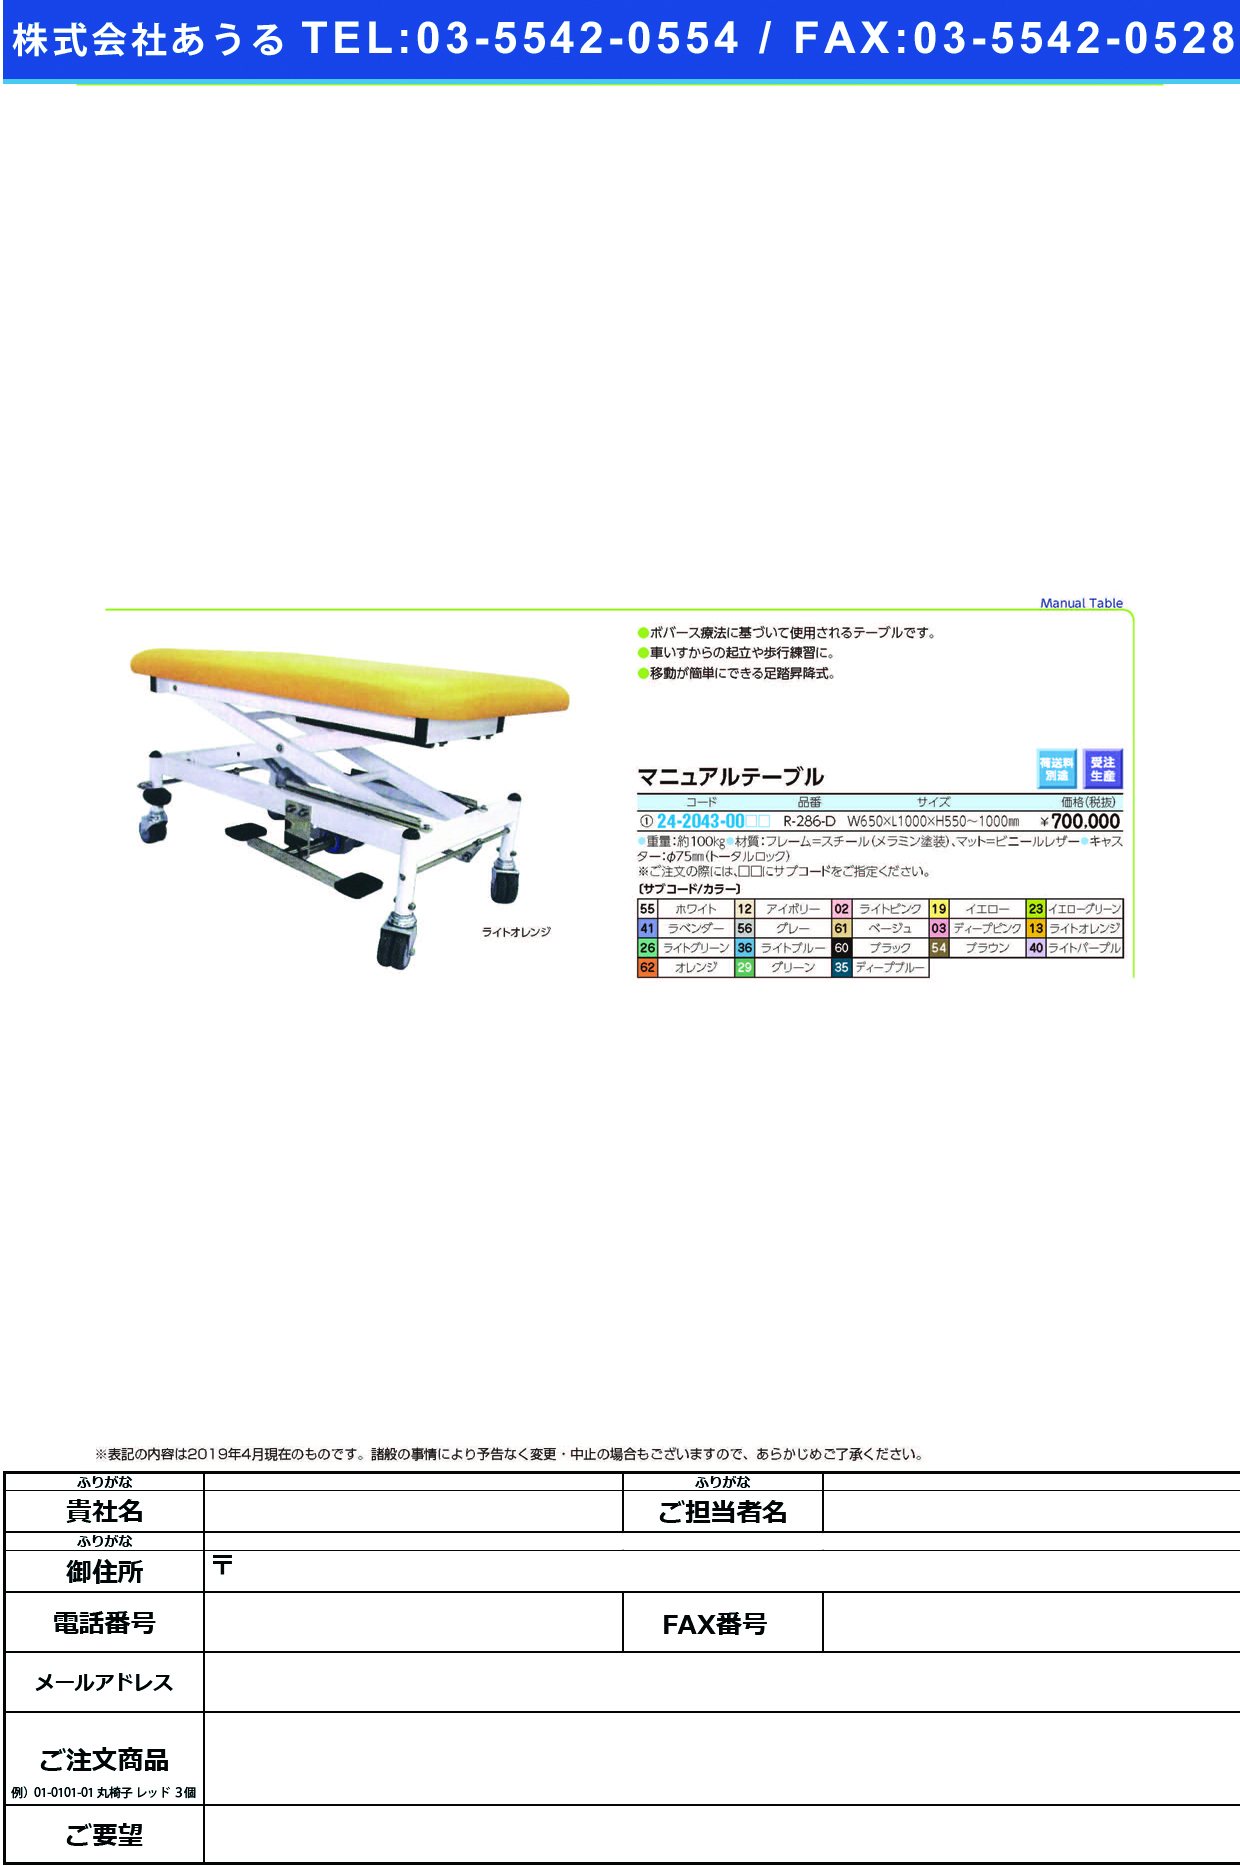 (24-2043-00)マニュアルテーブル R-286-D ﾏﾆｭｱﾙﾃｰﾌﾞﾙ グリーン【1台単位】【2019年カタログ商品】